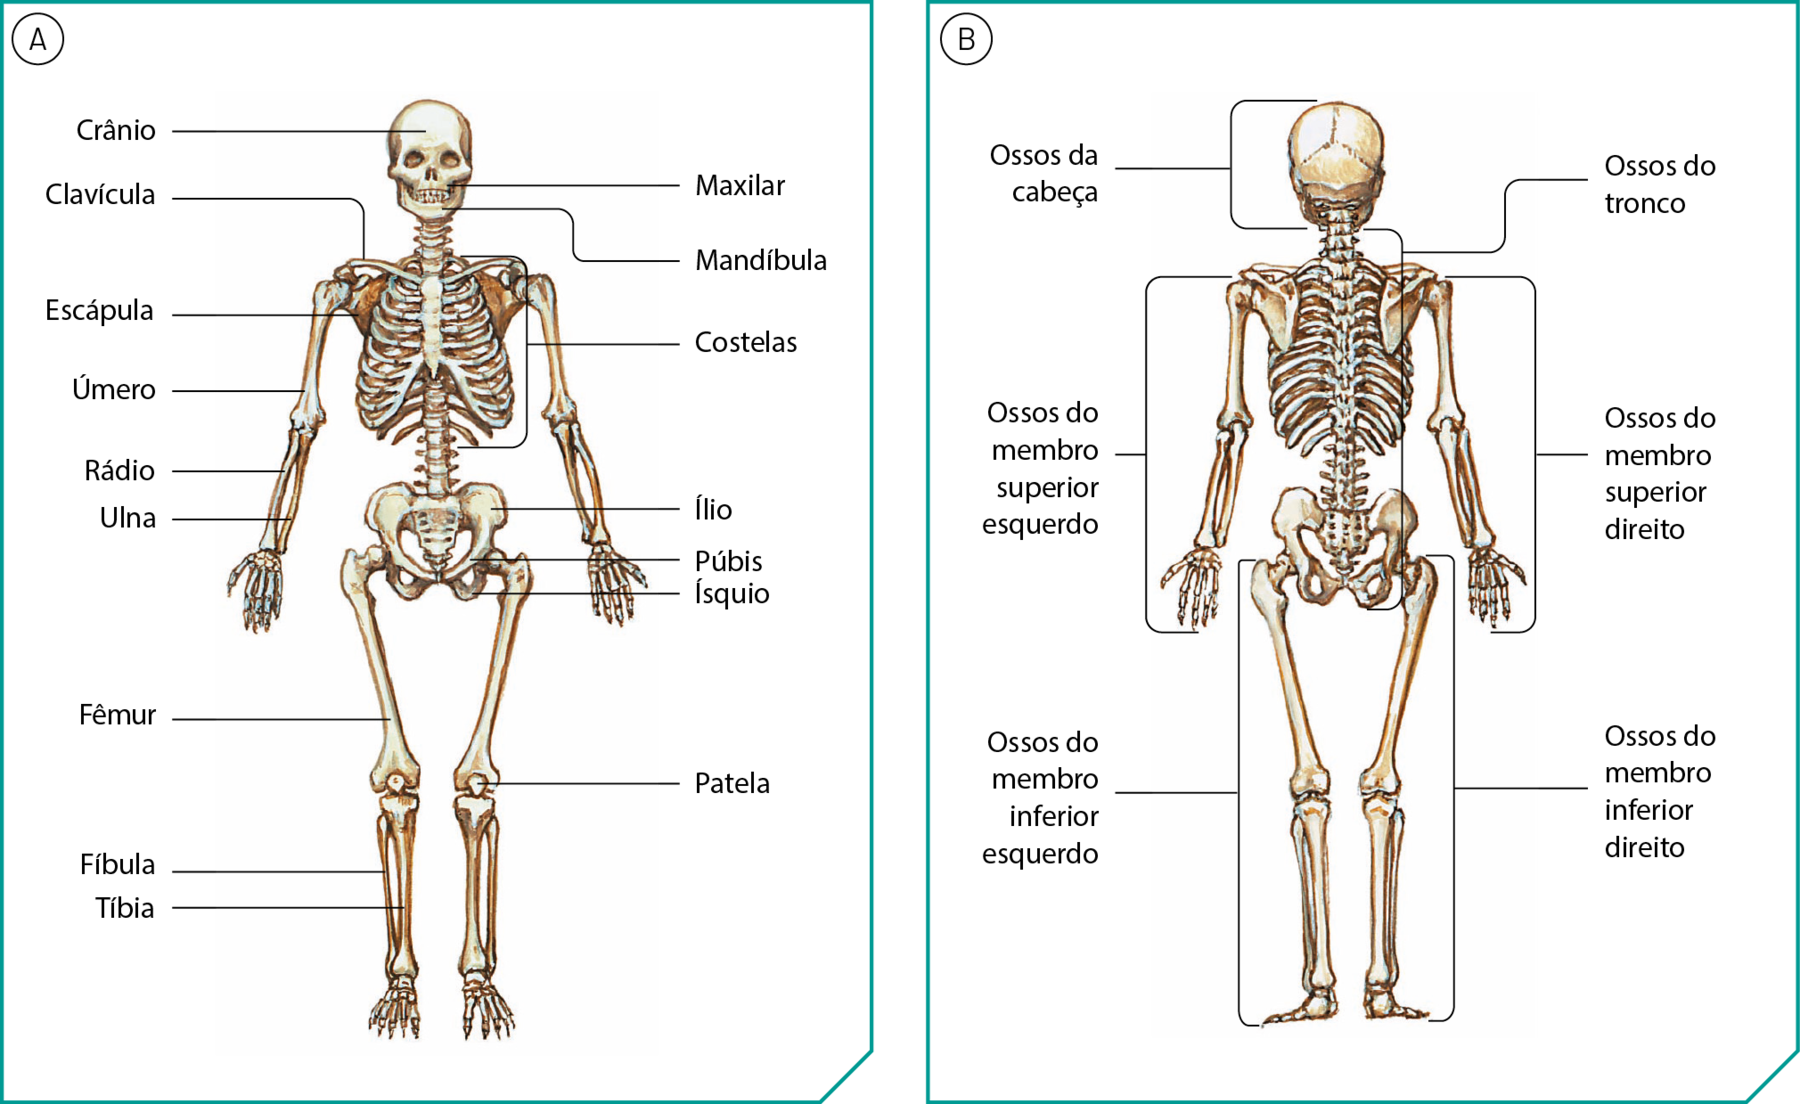 Ilustração A. Esqueleto de um ser humano de pé, virado para a frente. Há linhas de chamada nomeando alguns ossos. Da cabeça: crânio, maxilar e mandíbula. Do ombro: clavícula. Do peito: escápula e costelas. Do braço: úmero. Do antebraço: rádio e ulna. Do quadril: ílio, púbis e ísquio. Da coxa: fêmur. Do joelho: patela. Da perna: fíbula e tíbia. Ilustração B. Esqueleto de um ser humano de pé, virado para trás. Há linhas de chamada indicando conjuntos de ossos. De cima para baixo: ossos da cabeça. Do pescoço ao quadril: Ossos do tronco. Dos ombros até as mãos: Ossos do membro superior esquerdo. Ossos do membro superior direito. Das pernas até os pés: Ossos do membro inferior esquerdo. Ossos do membro inferior direito.